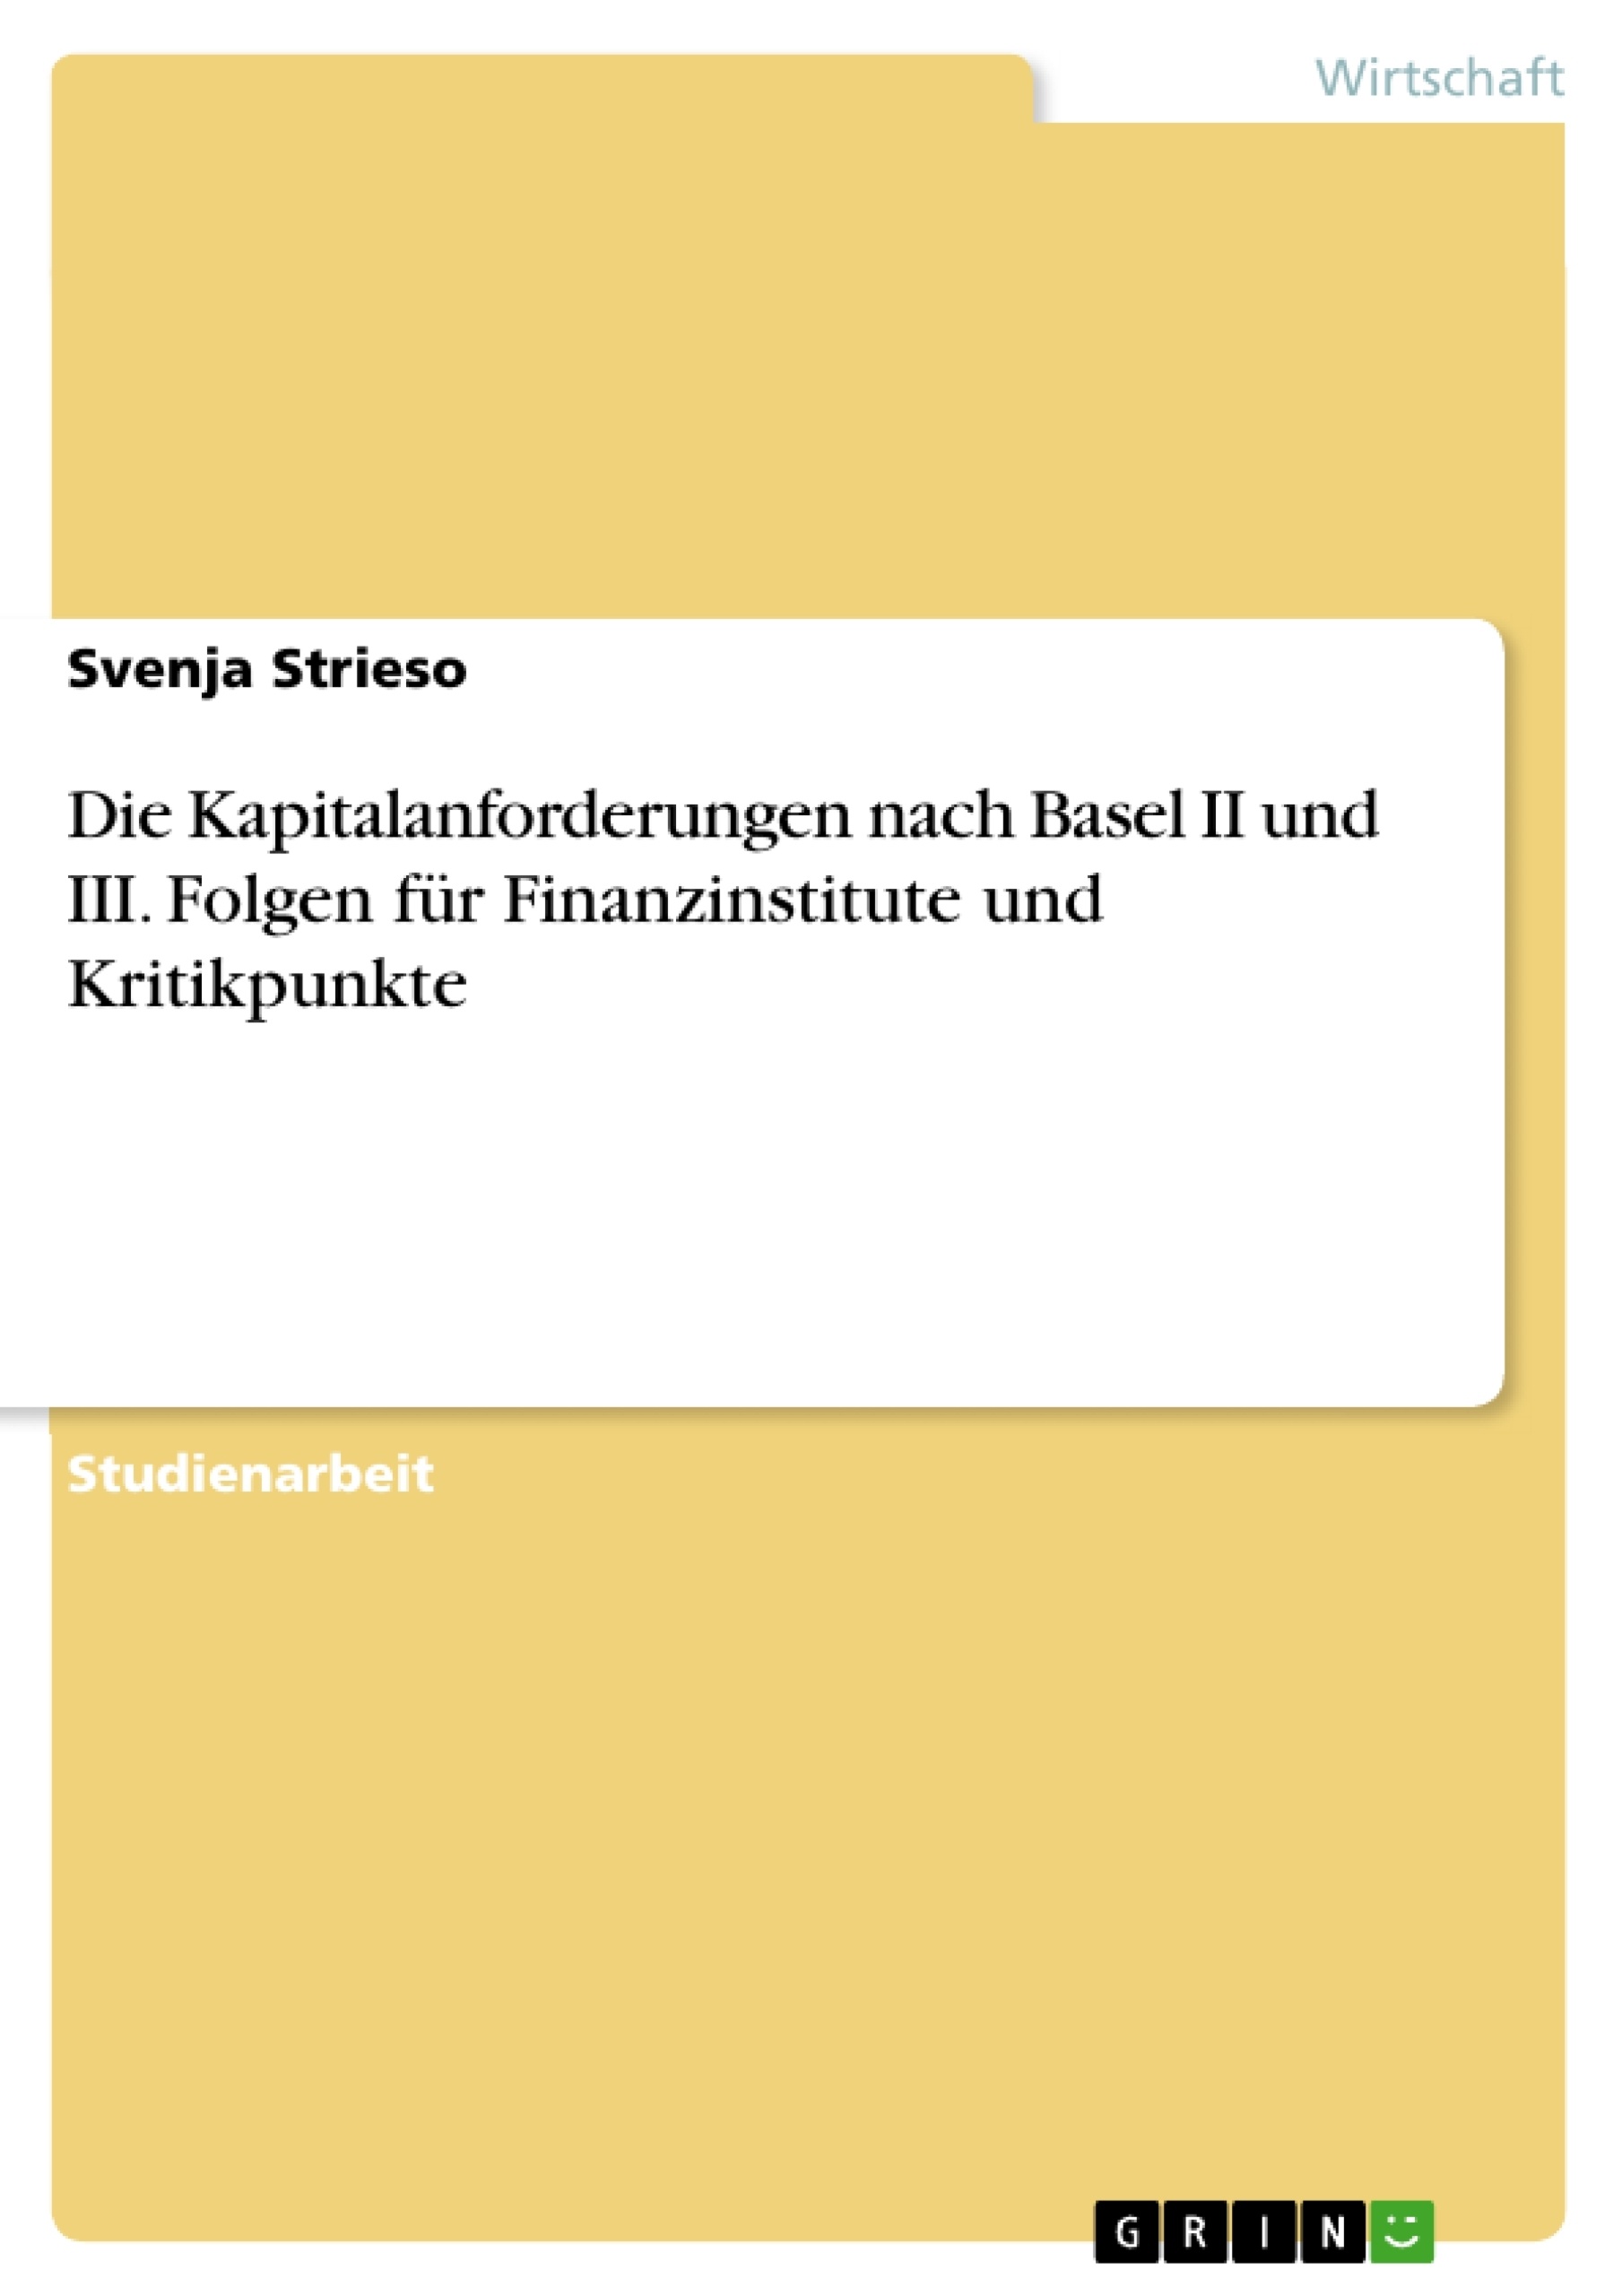 Titre: Die Kapitalanforderungen nach Basel II und III. Folgen für Finanzinstitute und Kritikpunkte